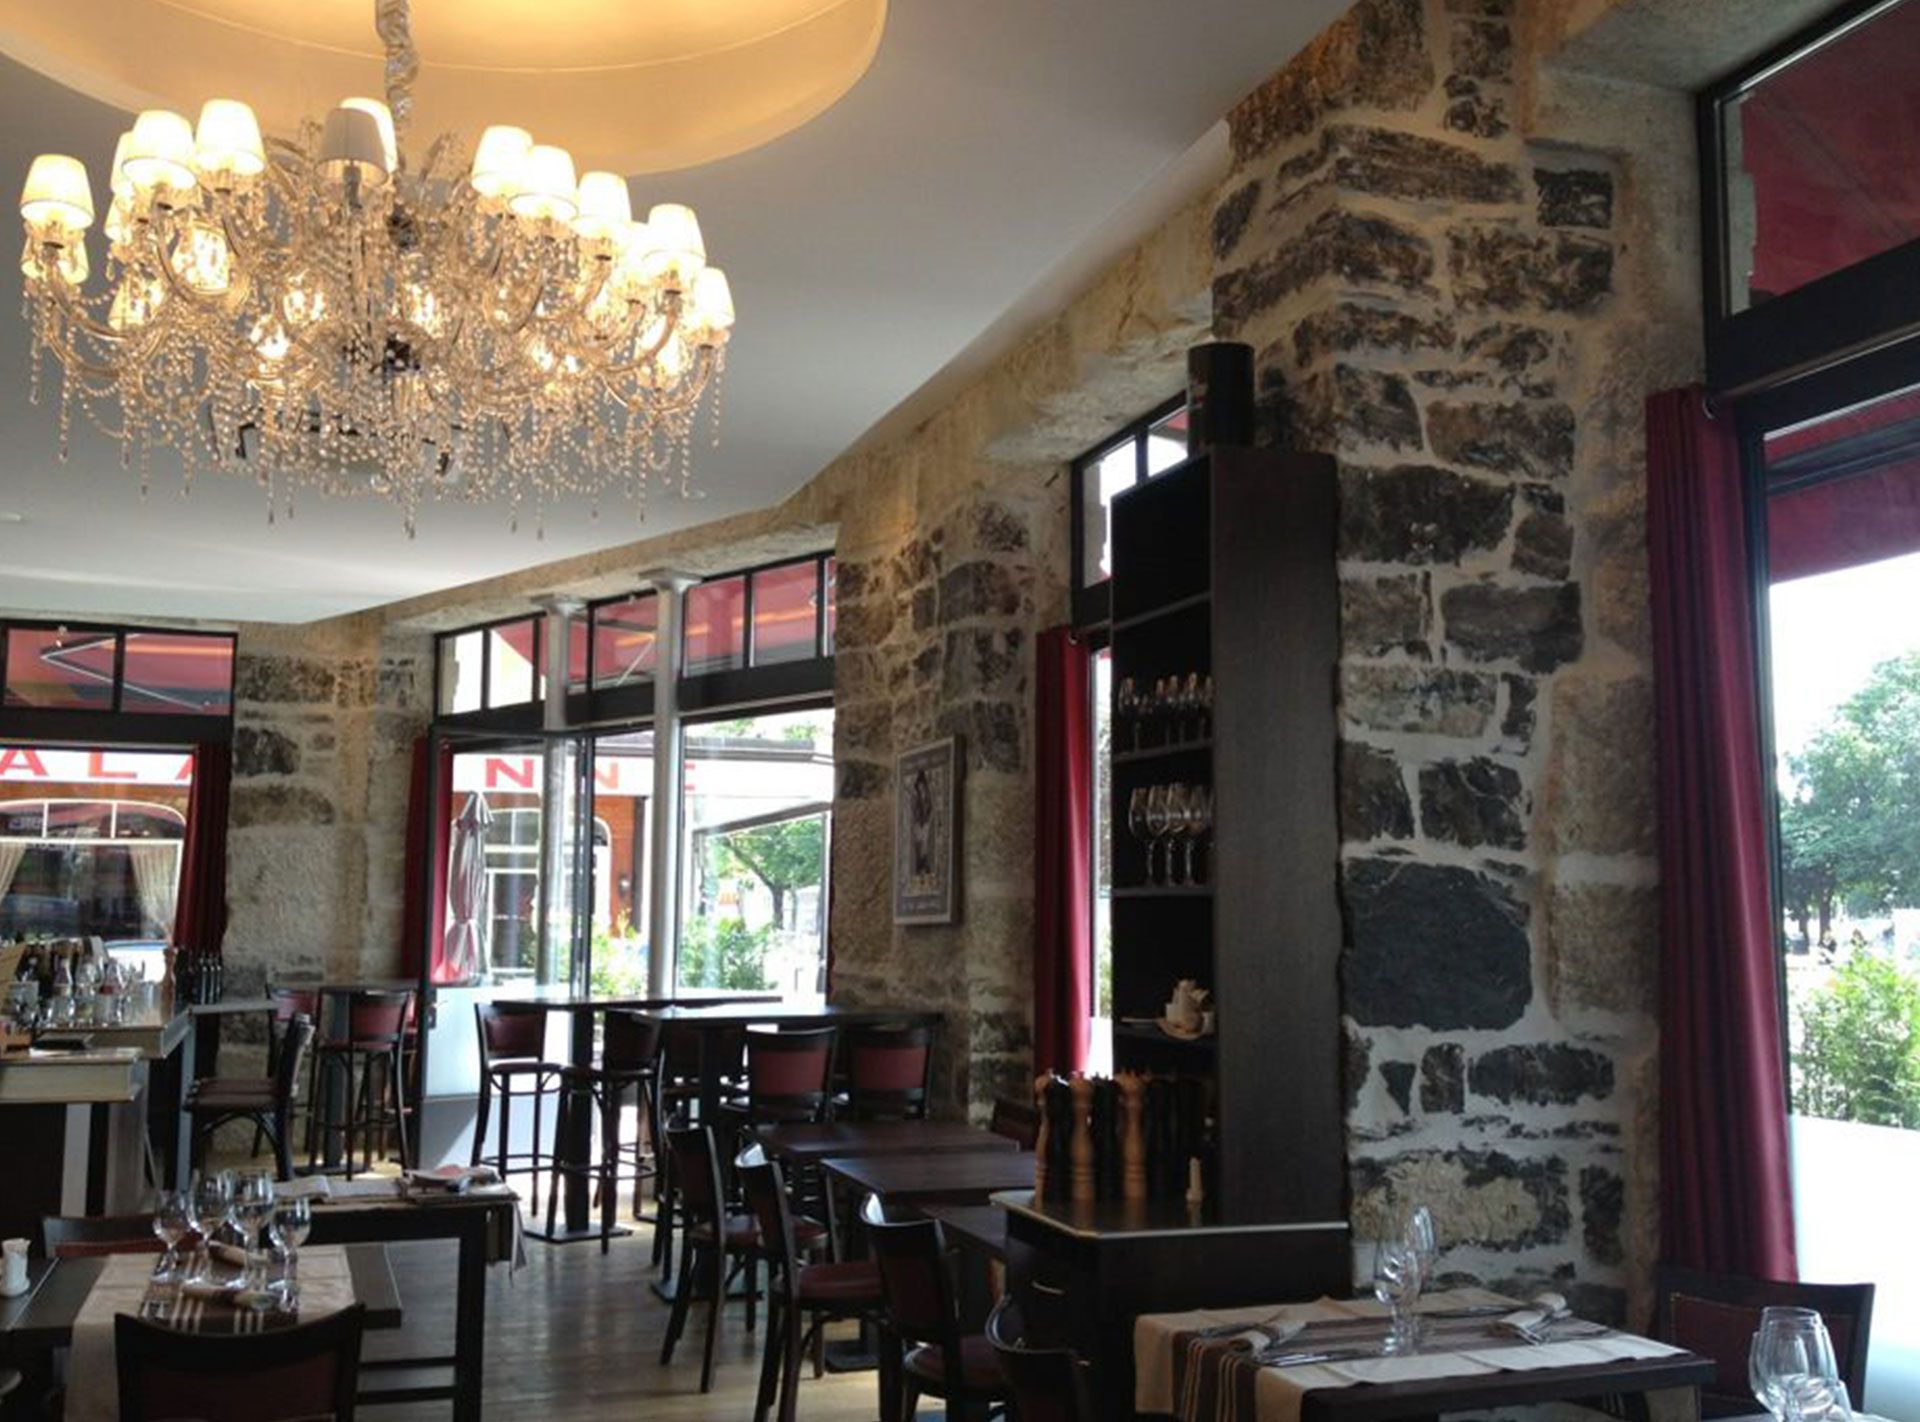 Salle du restaurant les 3 verres à Plainpalais. Réalisation ID Interior Design par Anne-Laure Ferry-Adam, architecte d'intérieur à Genève.